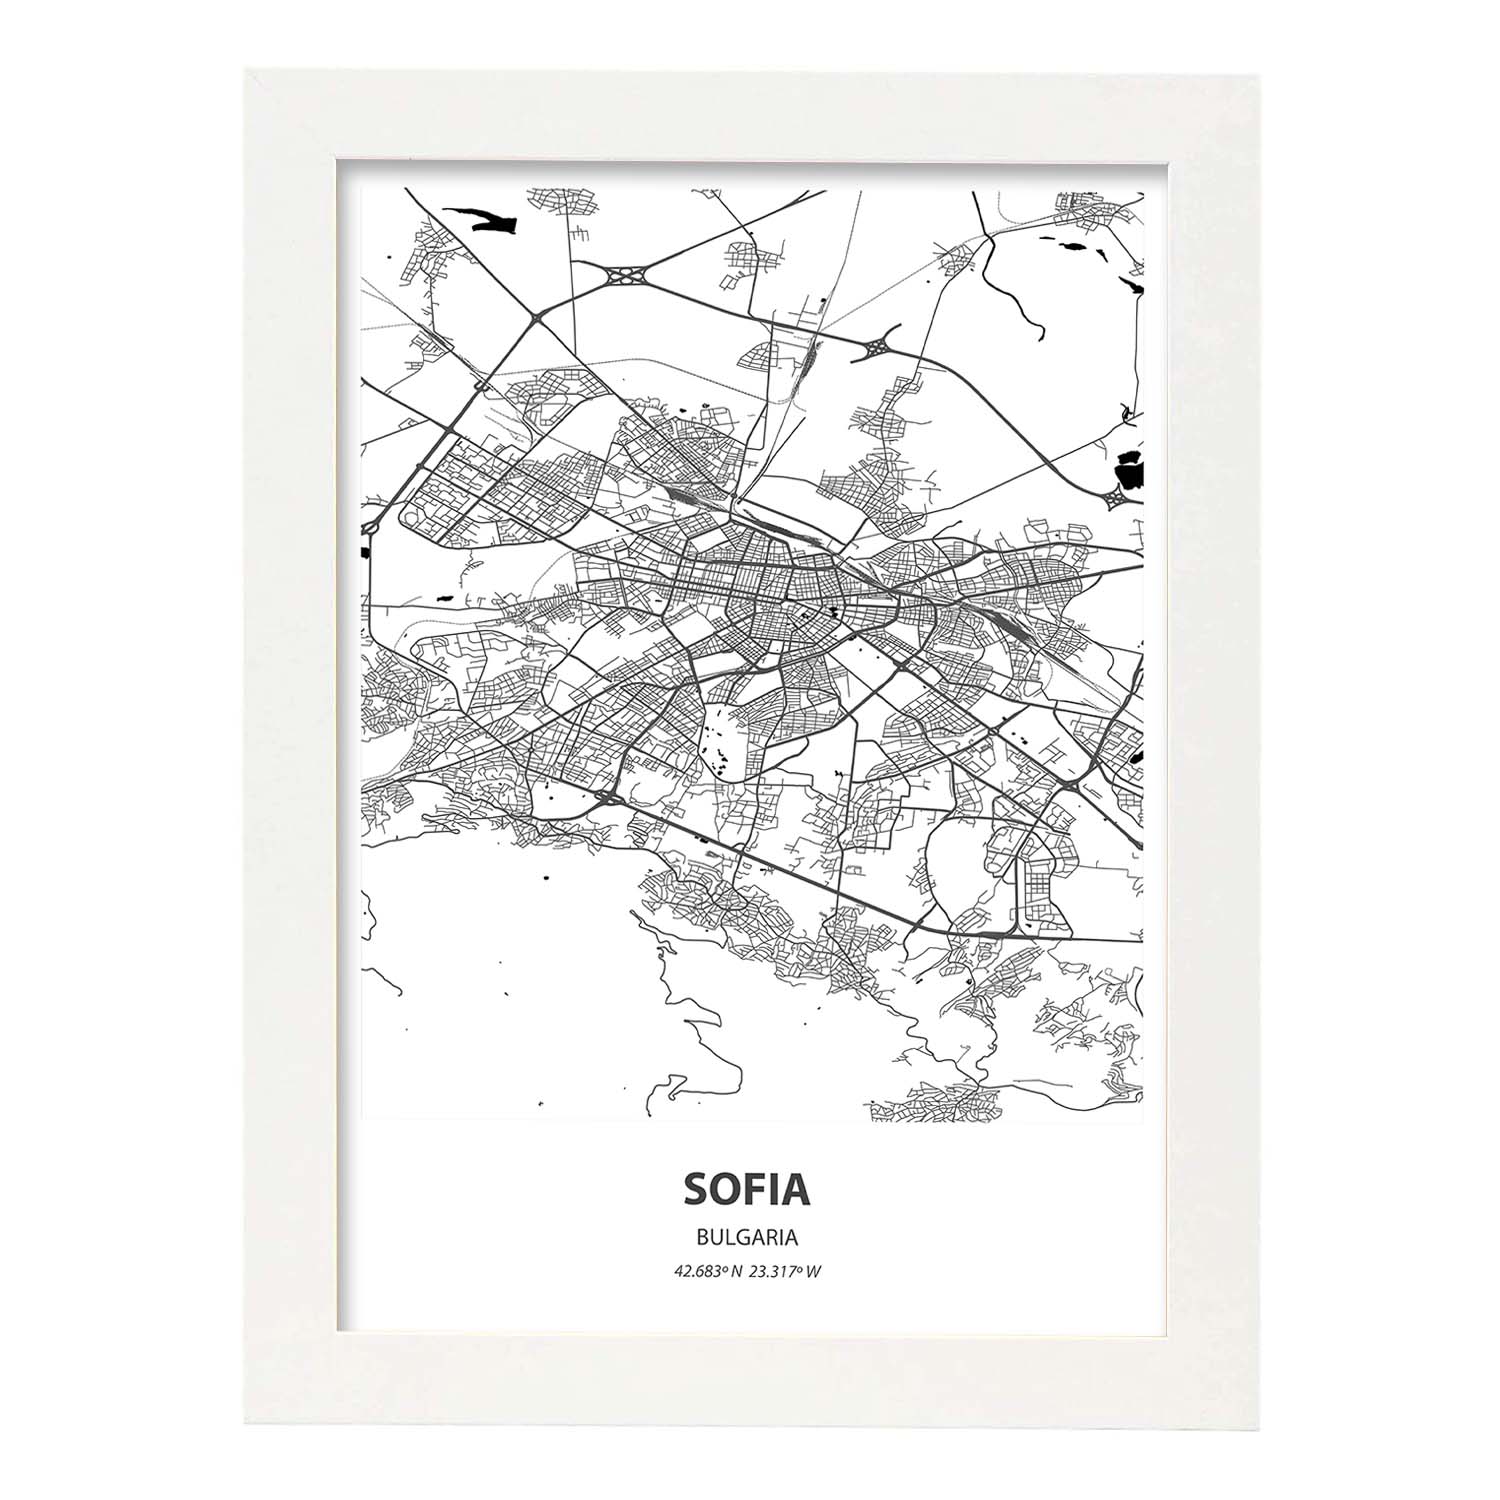 Poster con mapa de Sofia - Bulgaria. Láminas de ciudades de Europa con mares y ríos en color negro.-Artwork-Nacnic-A4-Marco Blanco-Nacnic Estudio SL